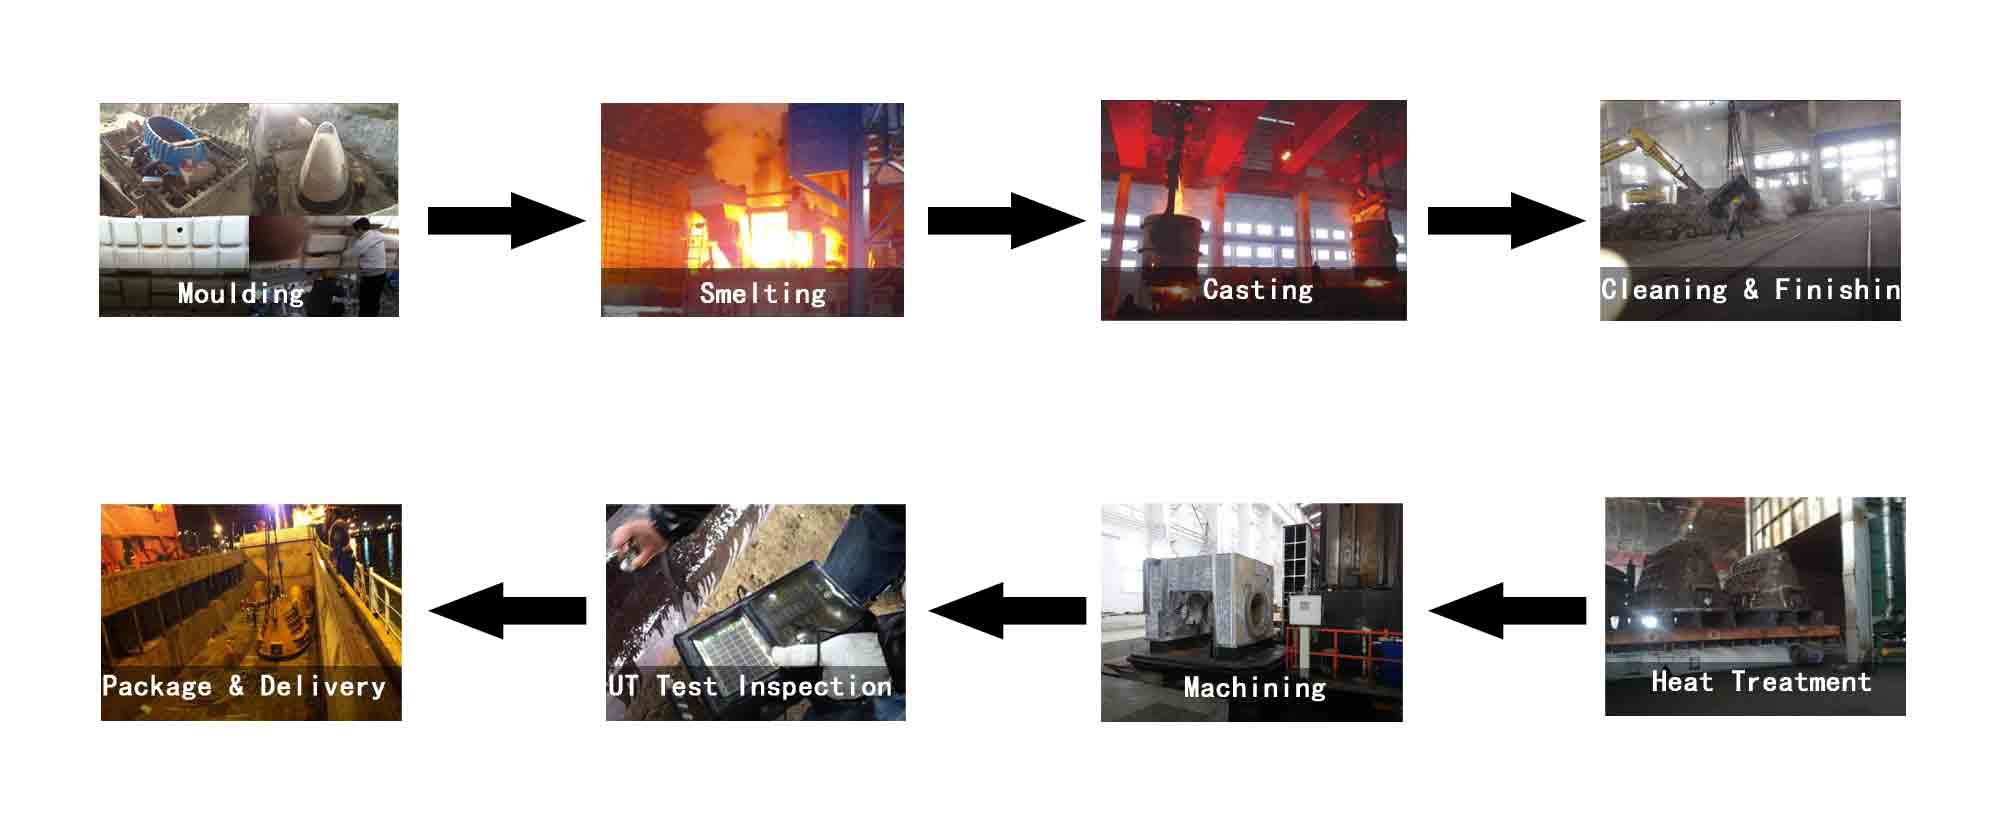 castings production progress flow chart